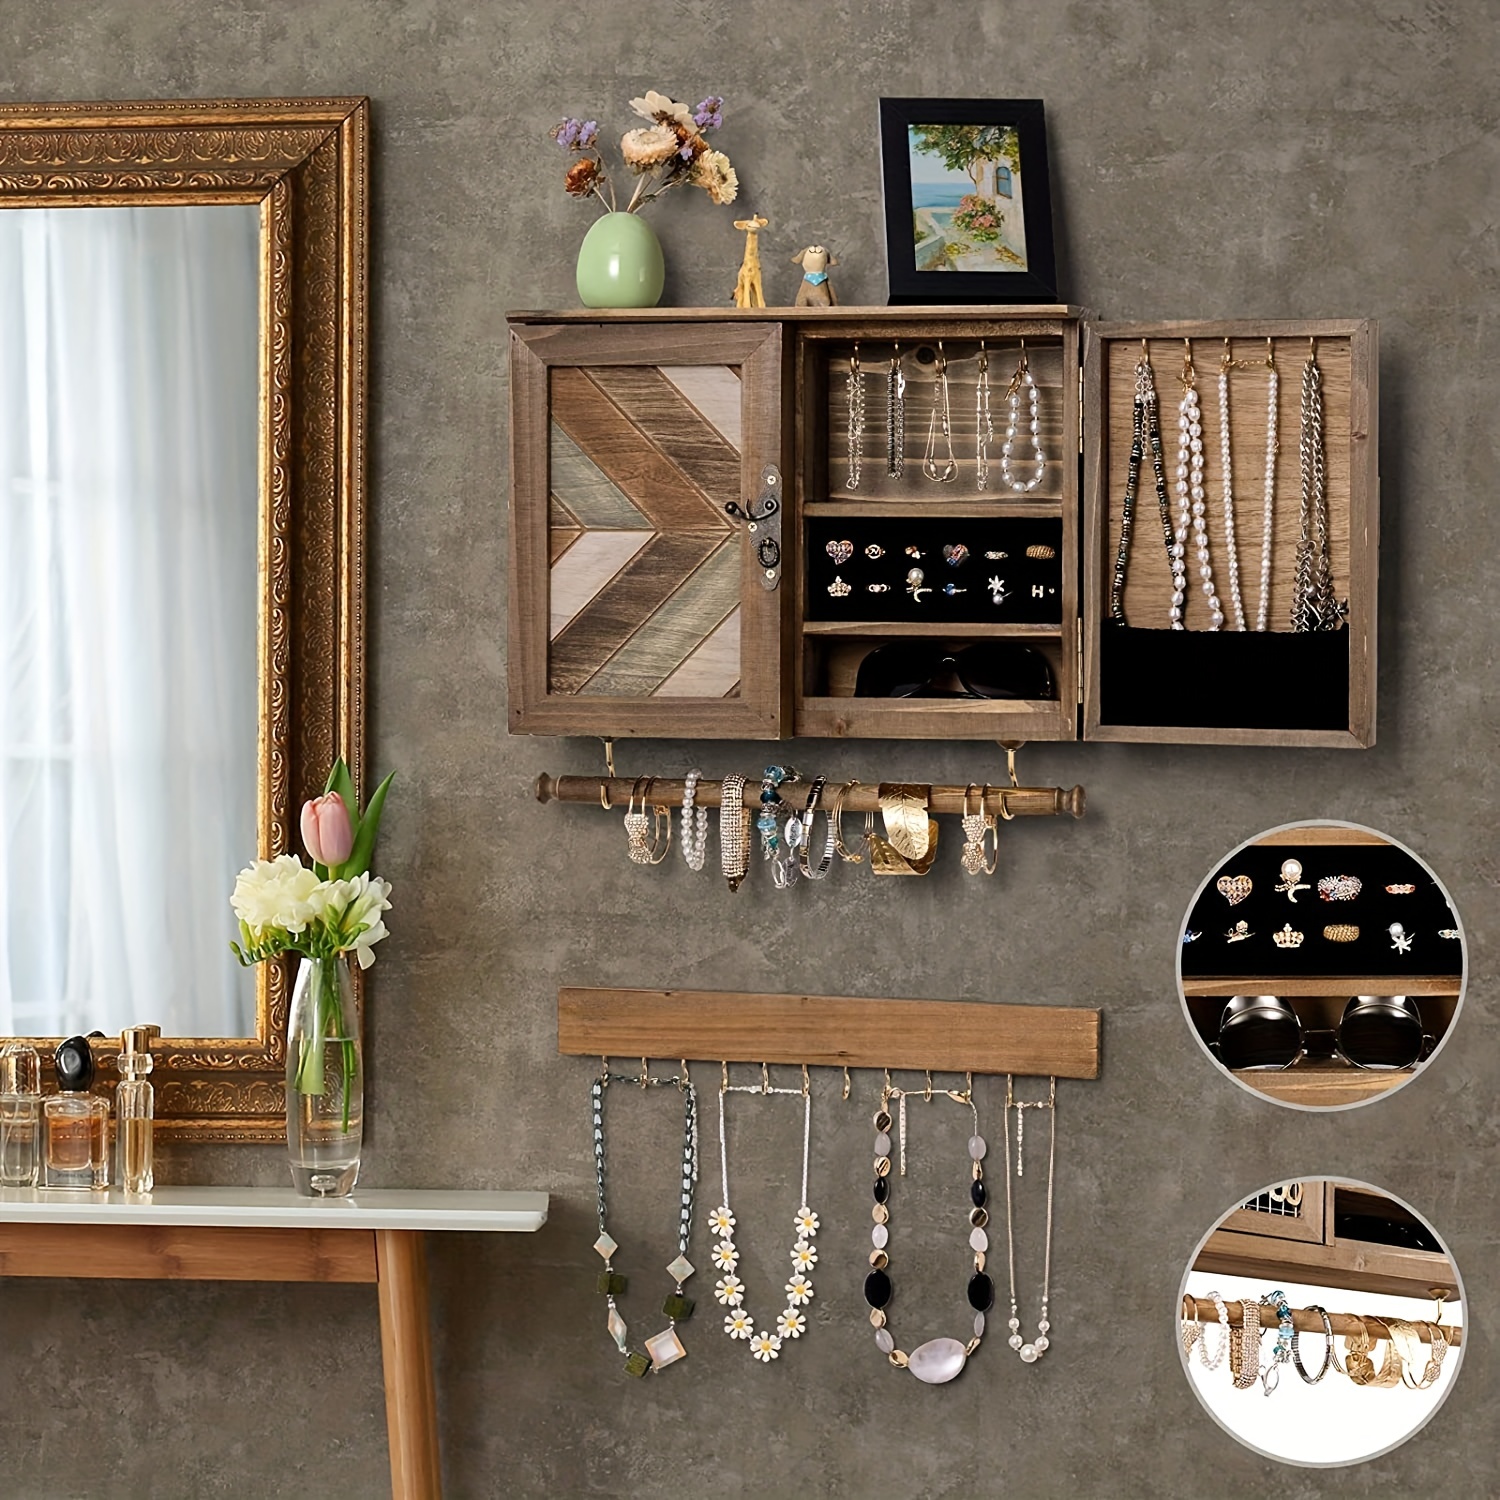 Jewelry Hanger- Dorm Decor